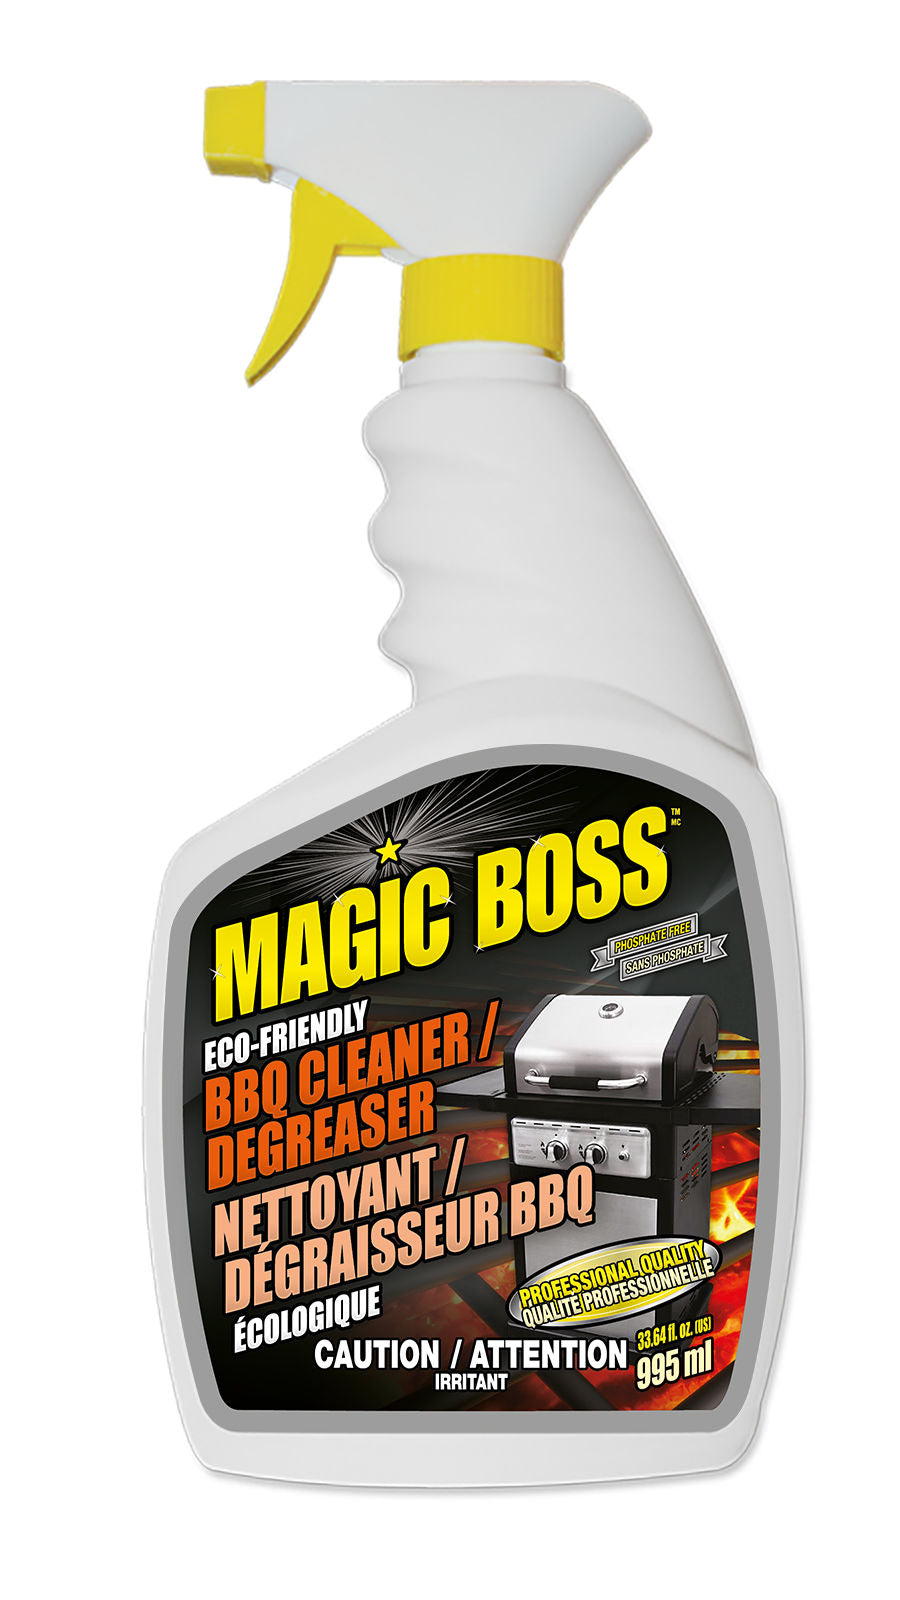 Magic Boss 2900 - Bbq cleaner / degreaser (995 ml)